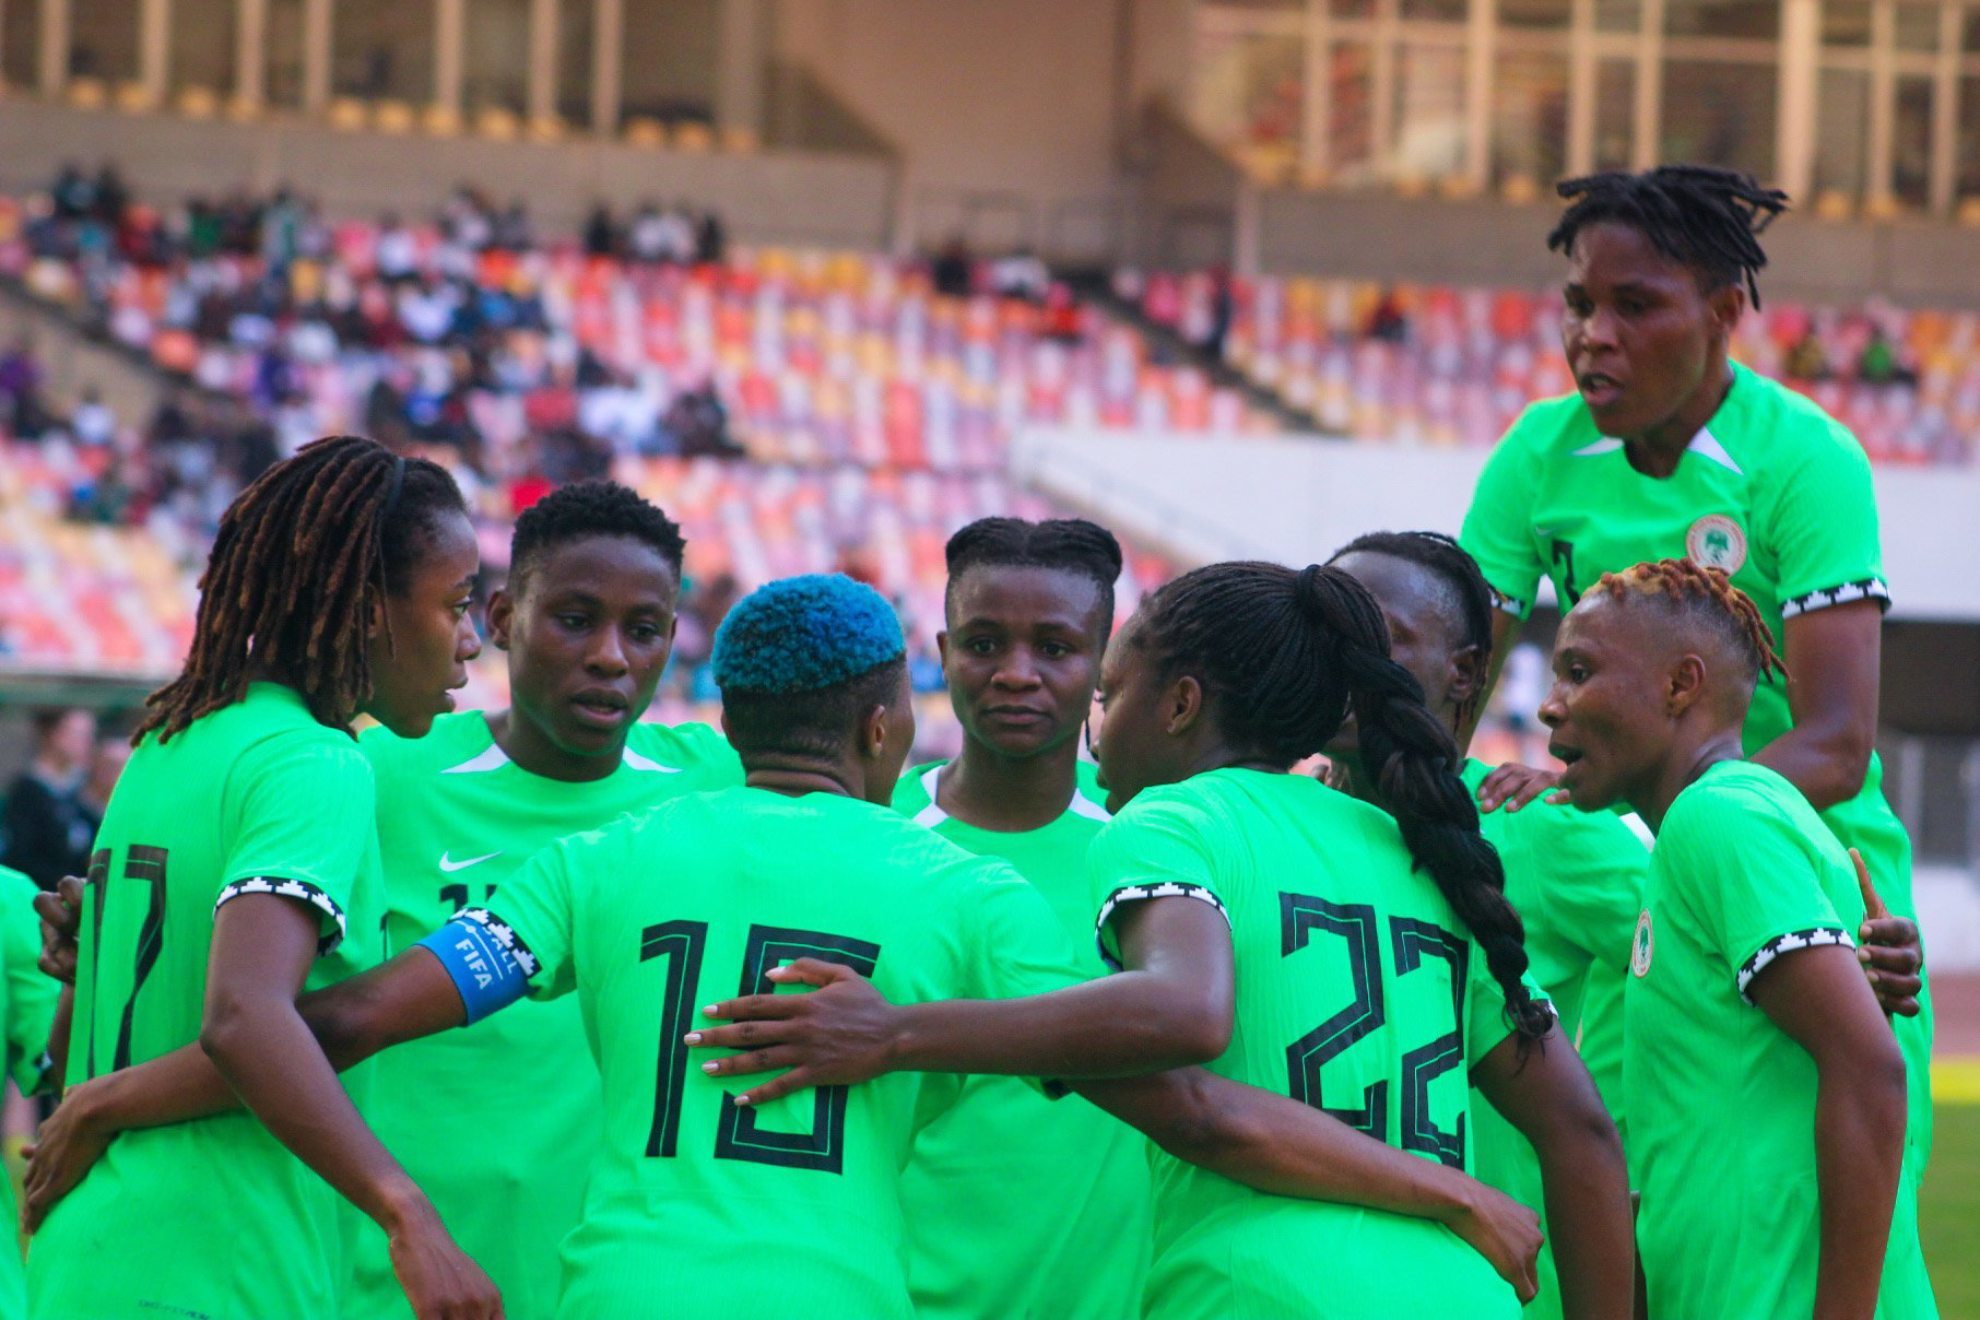 Las jugadoras celebran el gol anotado ante Sudfrica en la eliminatoria.